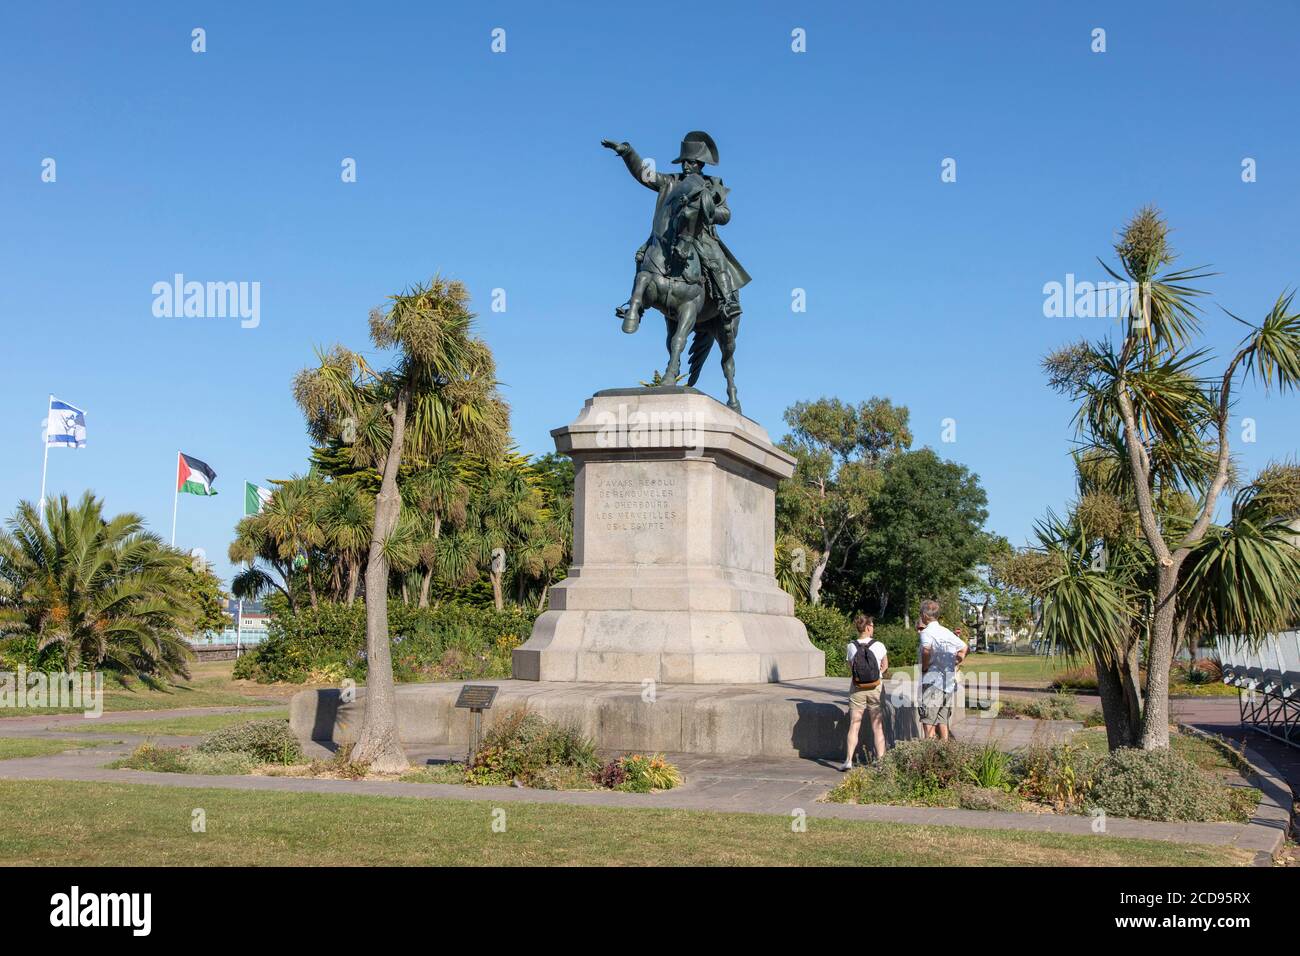 France, Manche, Cherbourg, place Napoleon (Napoleon's Square), equestrian statue of Napoleon Stock Photo